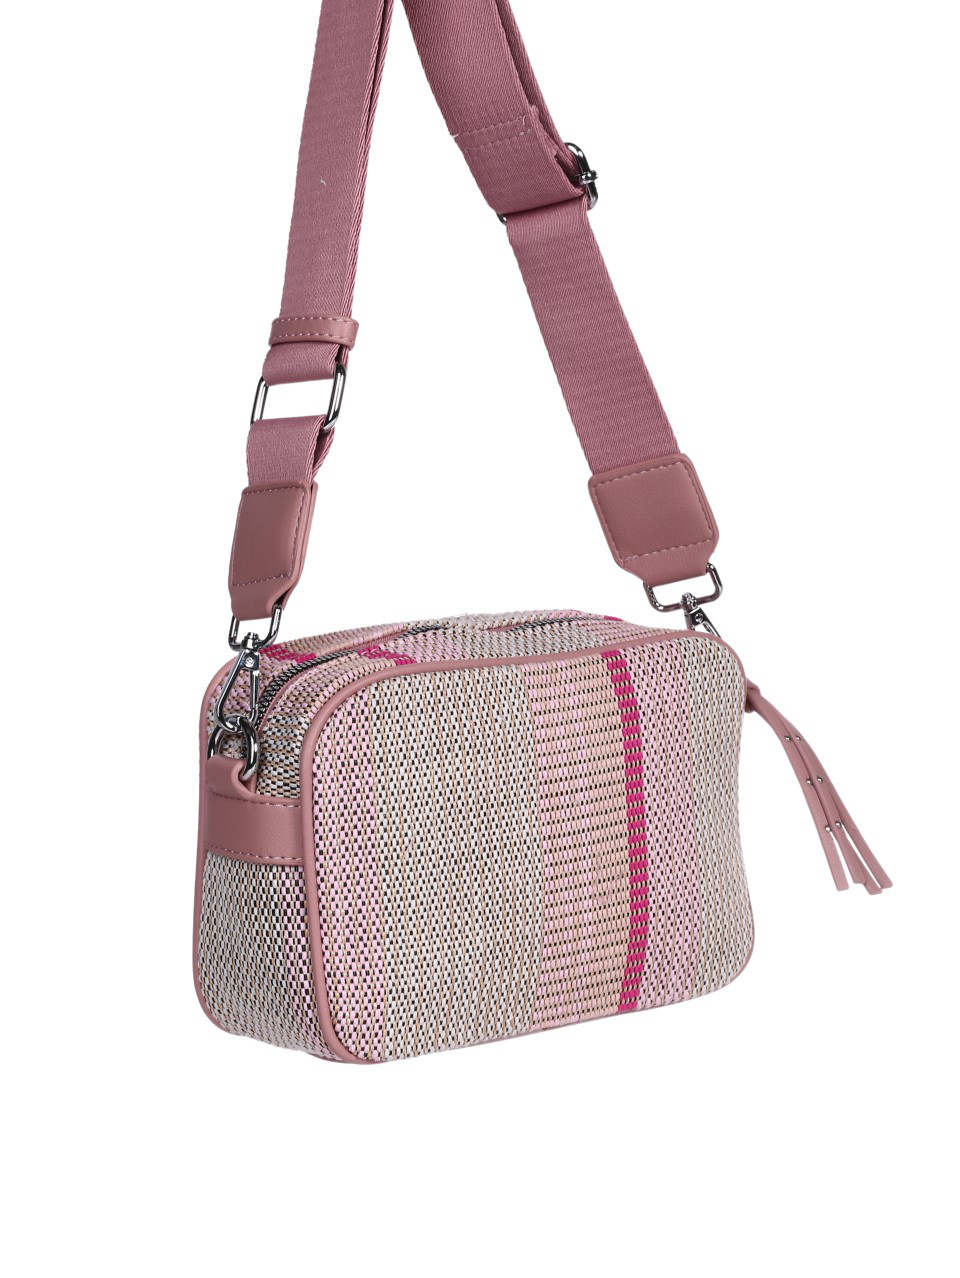 Ежедневна дамска чанта в розово 9Q-24280 pink